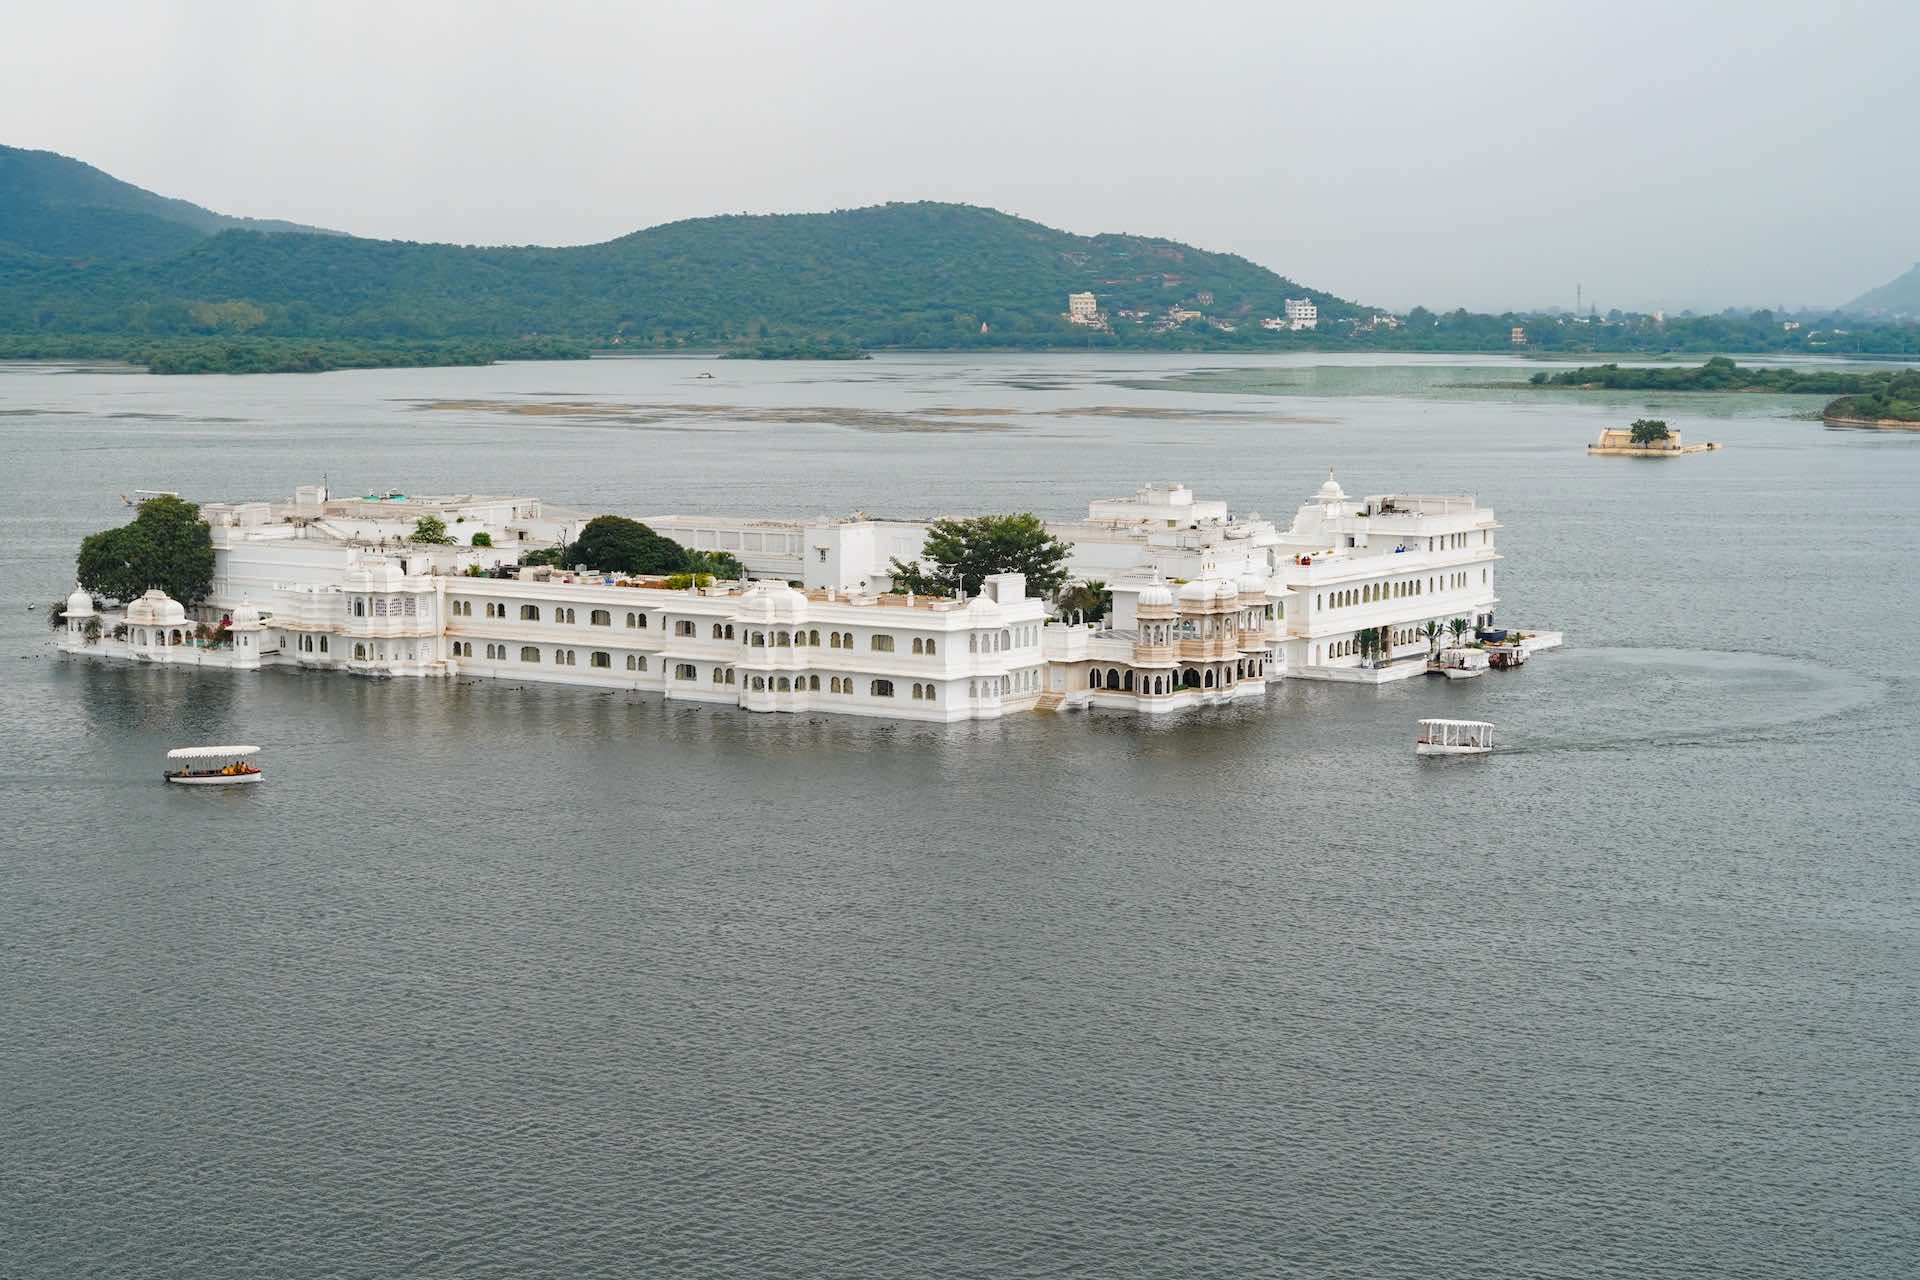 Aerial photograph of Taj Lake Palace, Udaipur, India